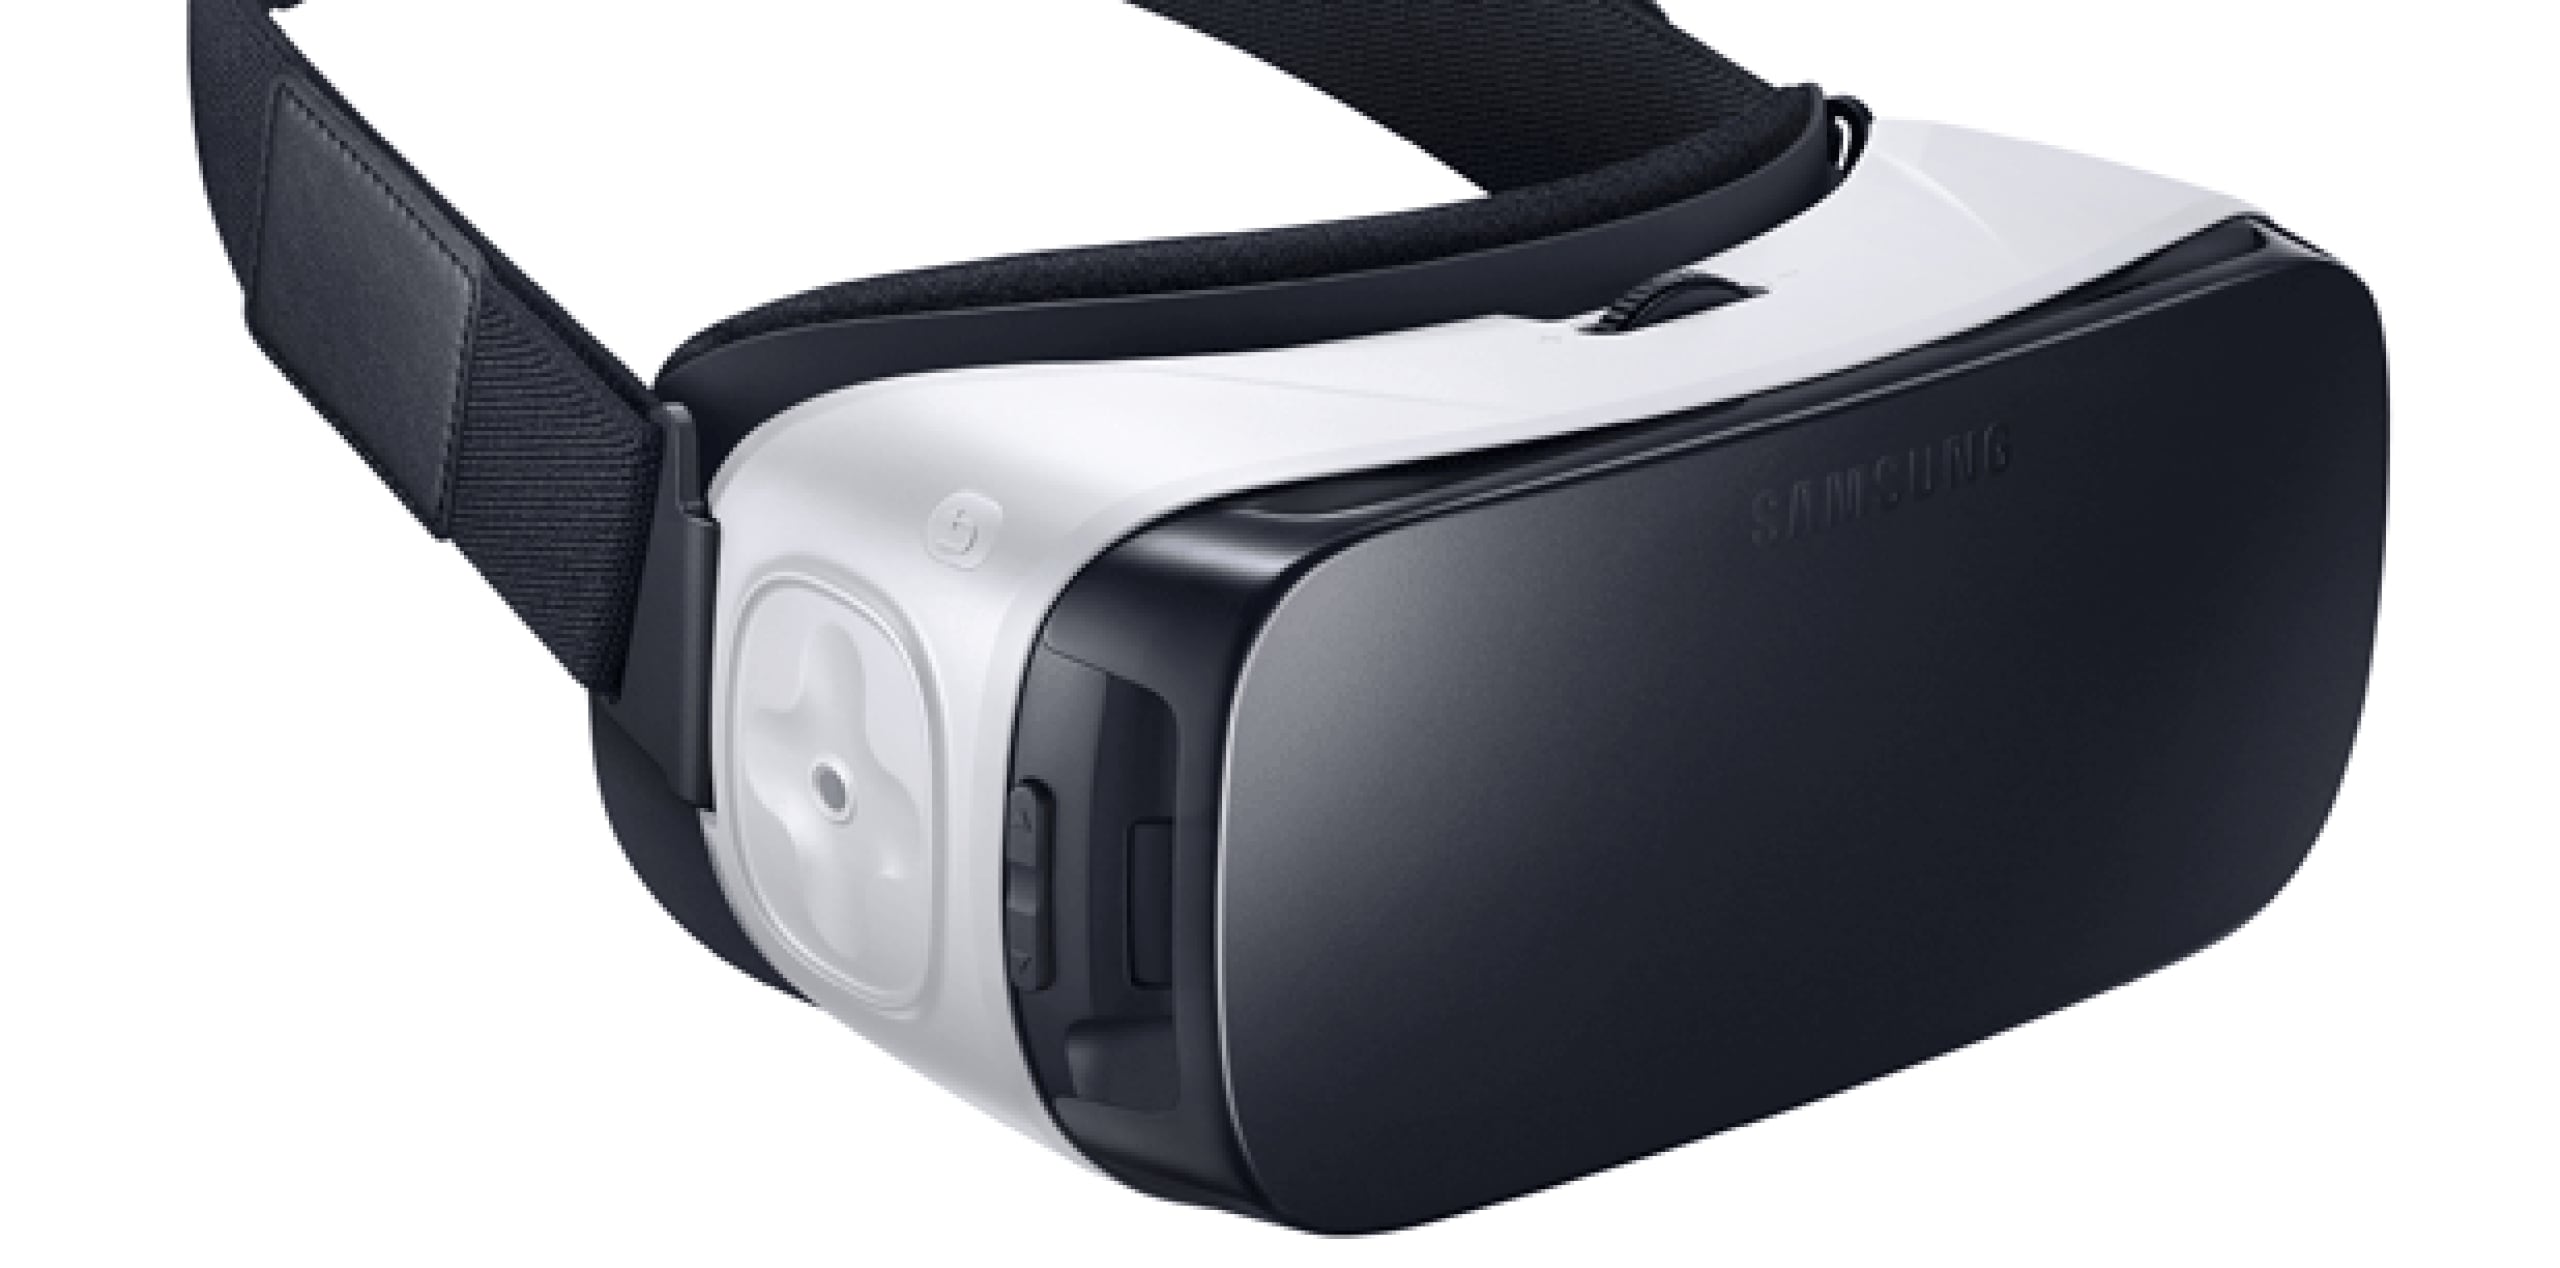 El Gear VR está diseñado para uso cuando estás sentado, preferiblemente un asiento giratorio. No puedes caminar para explorar el ambiente virtual. (Samsung vía AP)